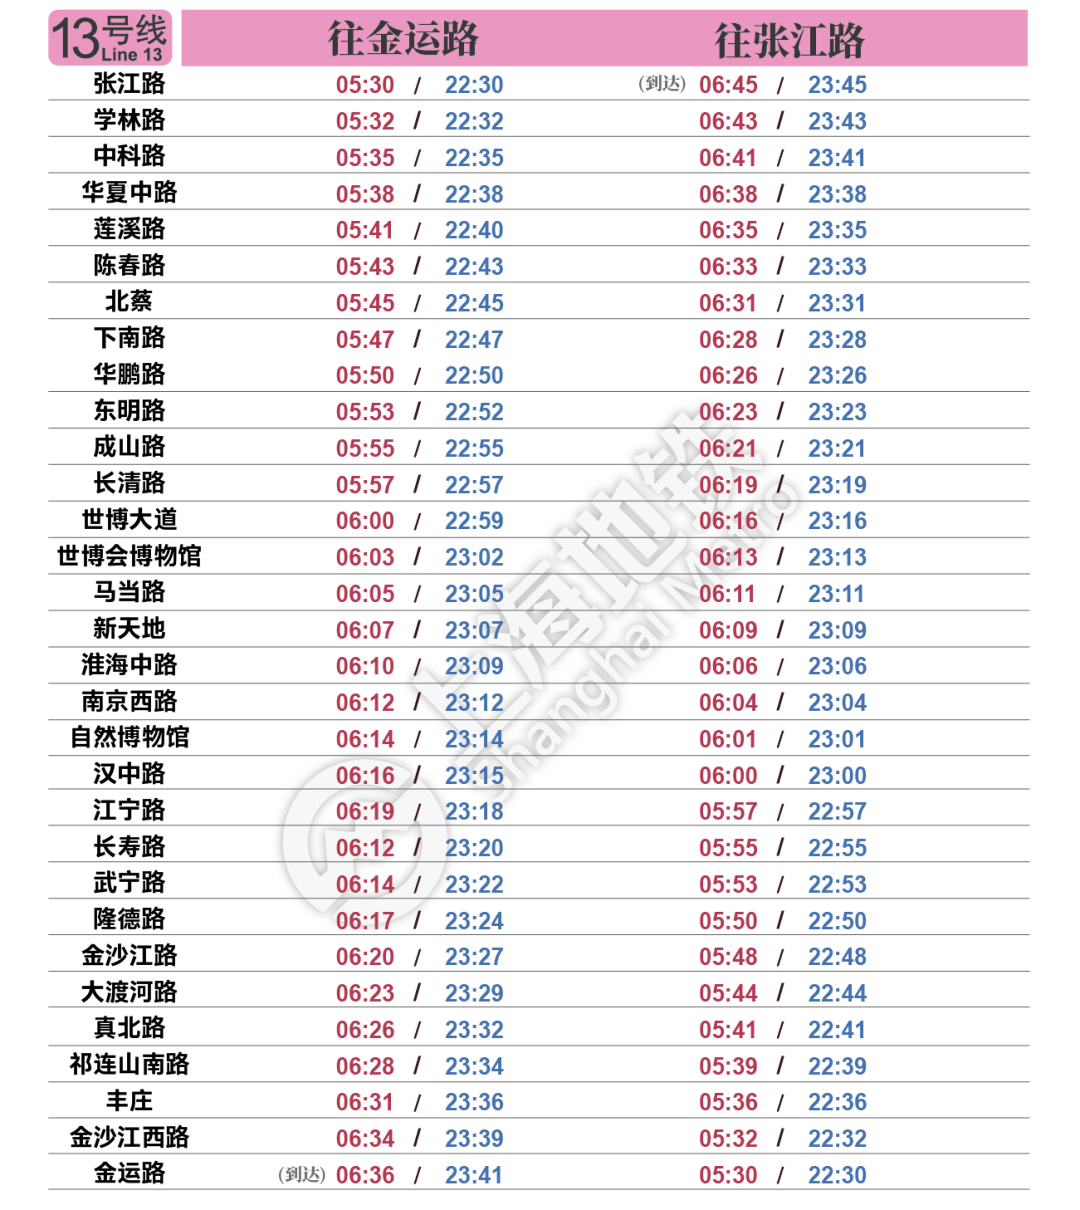 奉浦市民 上海地铁最新首末班车时刻表公布(附新版全